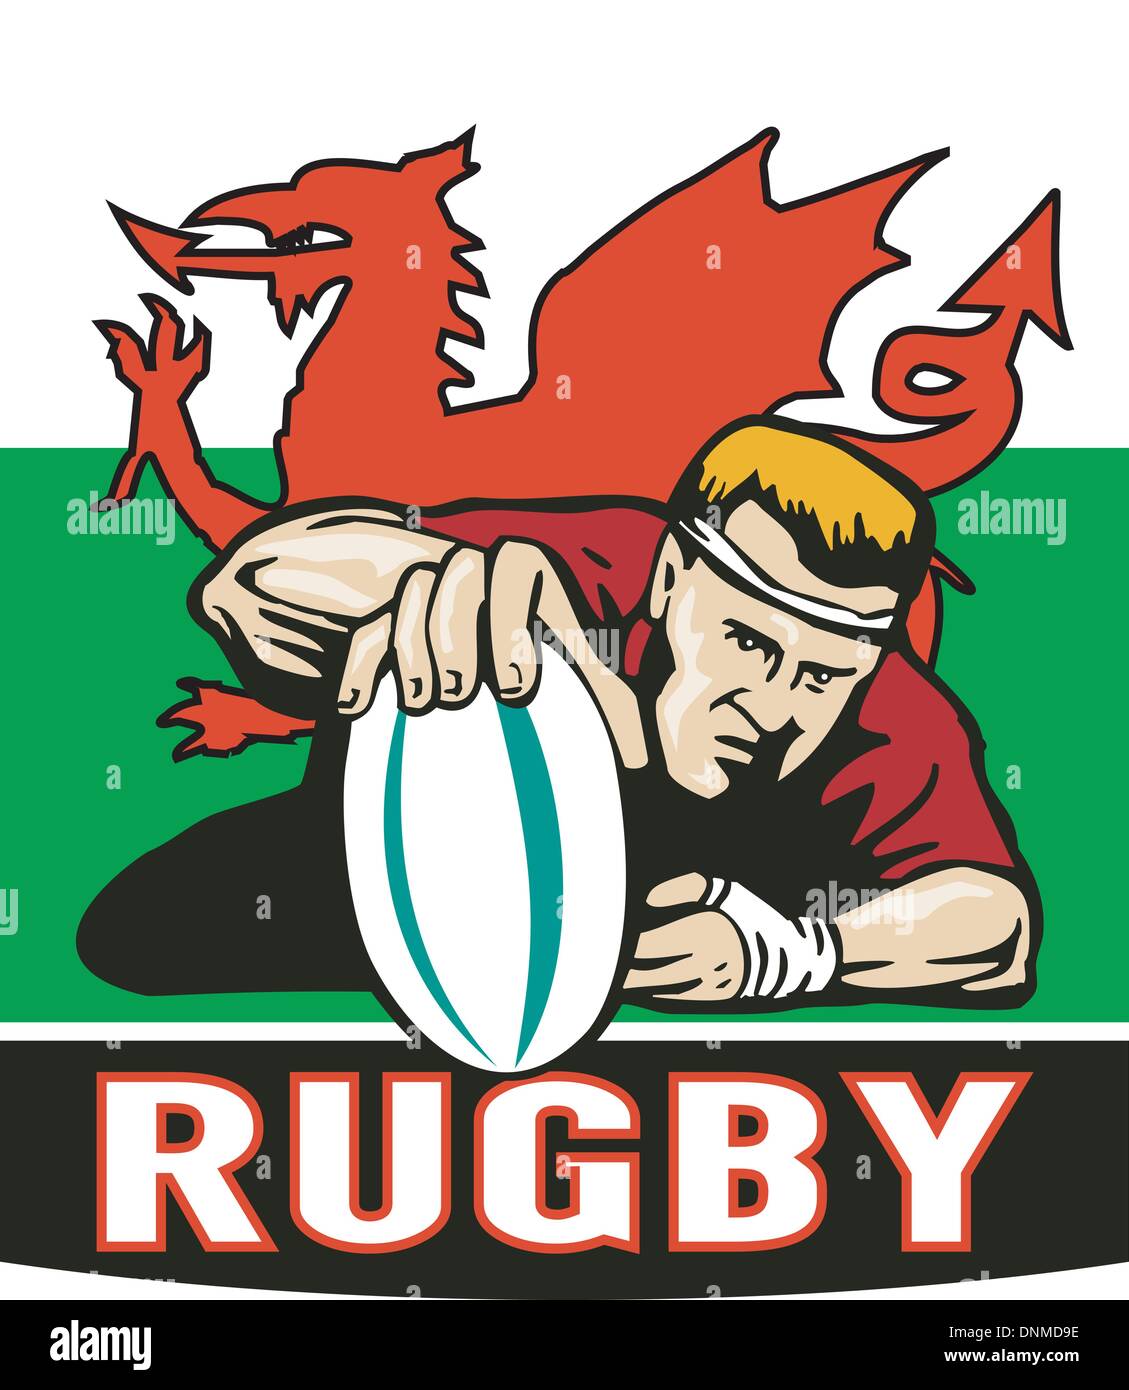 Beispiel für ein Rugby-Spieler scoring Versuch von vorne mit Wales gesehen oder walisische Flagge im Hintergrund und die Worte "Rugby" Stock Vektor